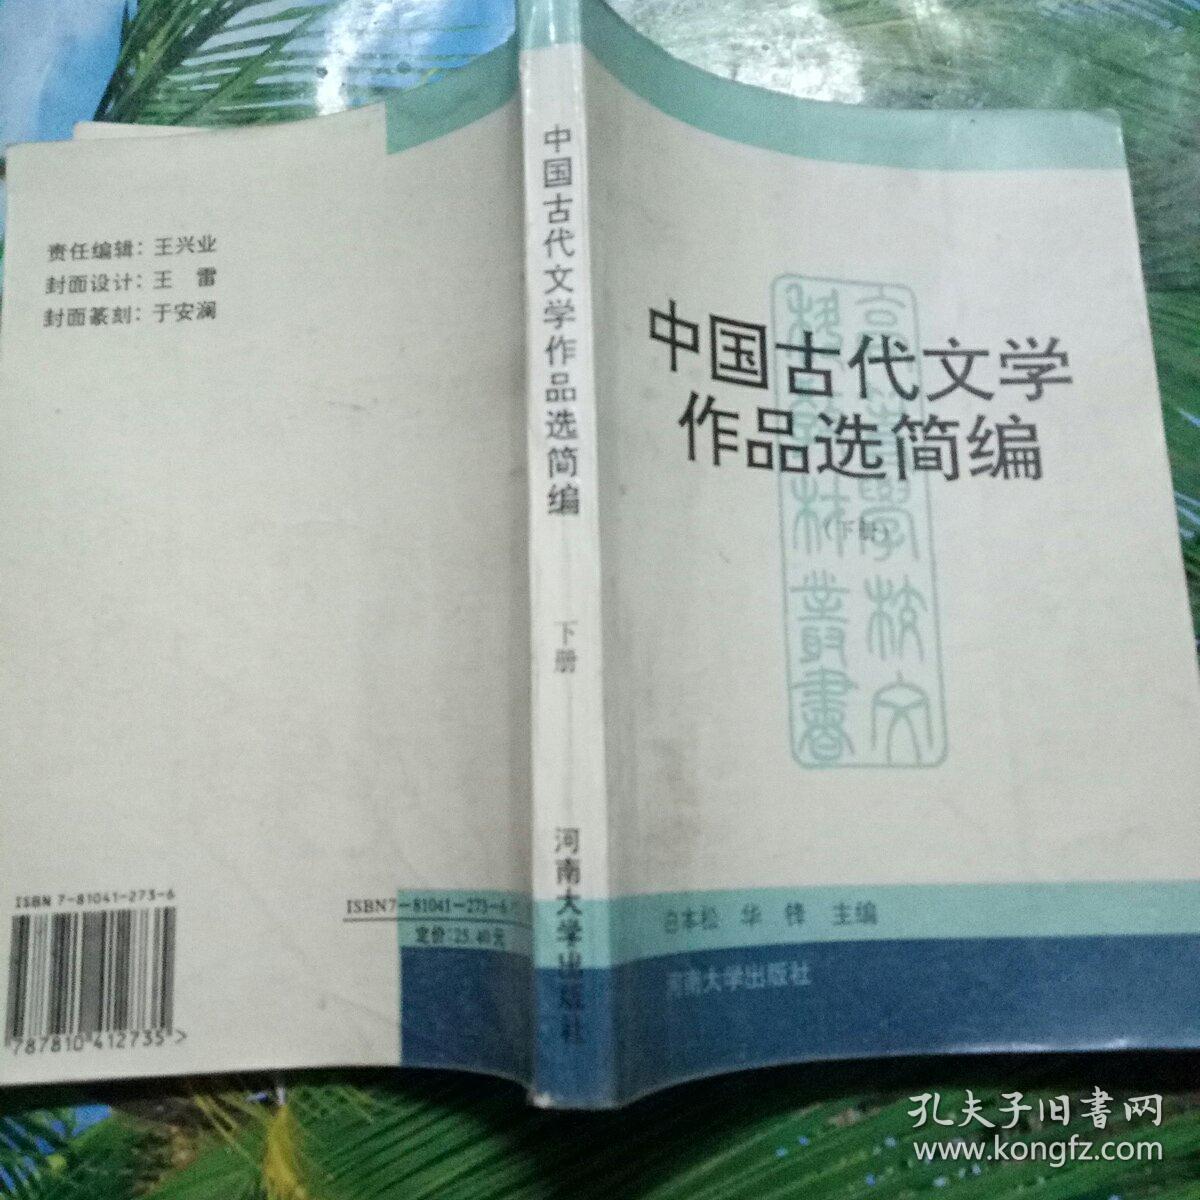 中国古代文学作品选简编（下册）